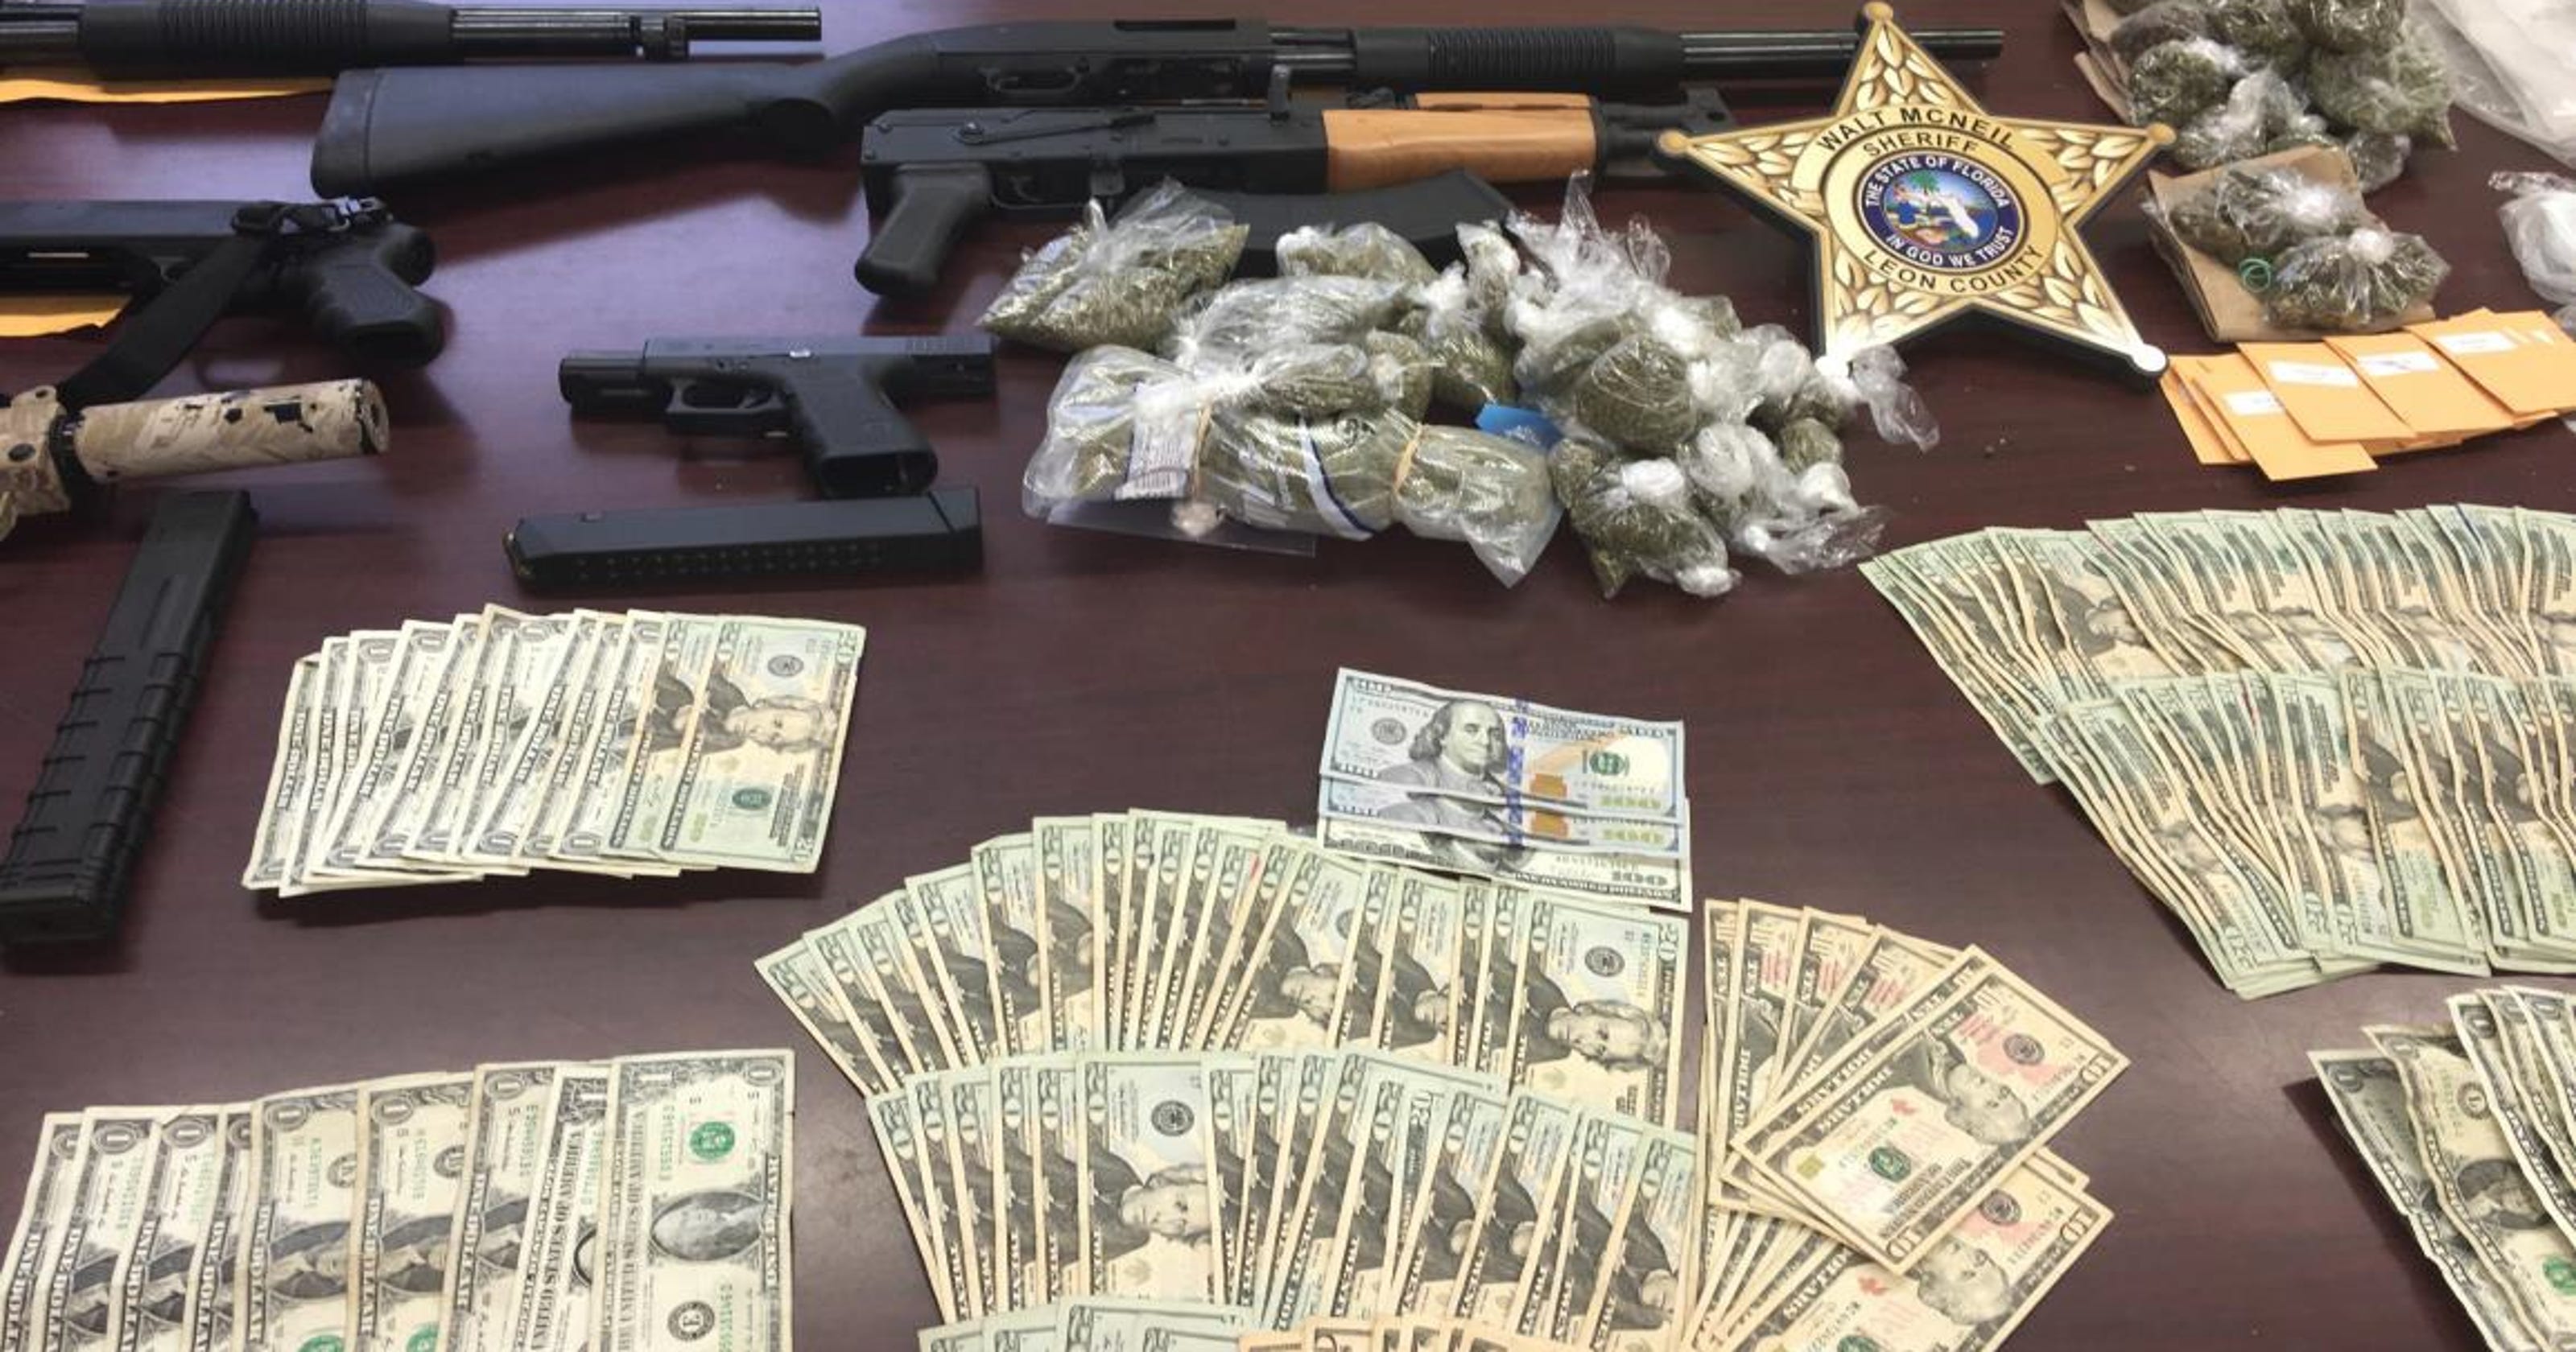 Guns Drugs And Cash Seized In Apartment Raid